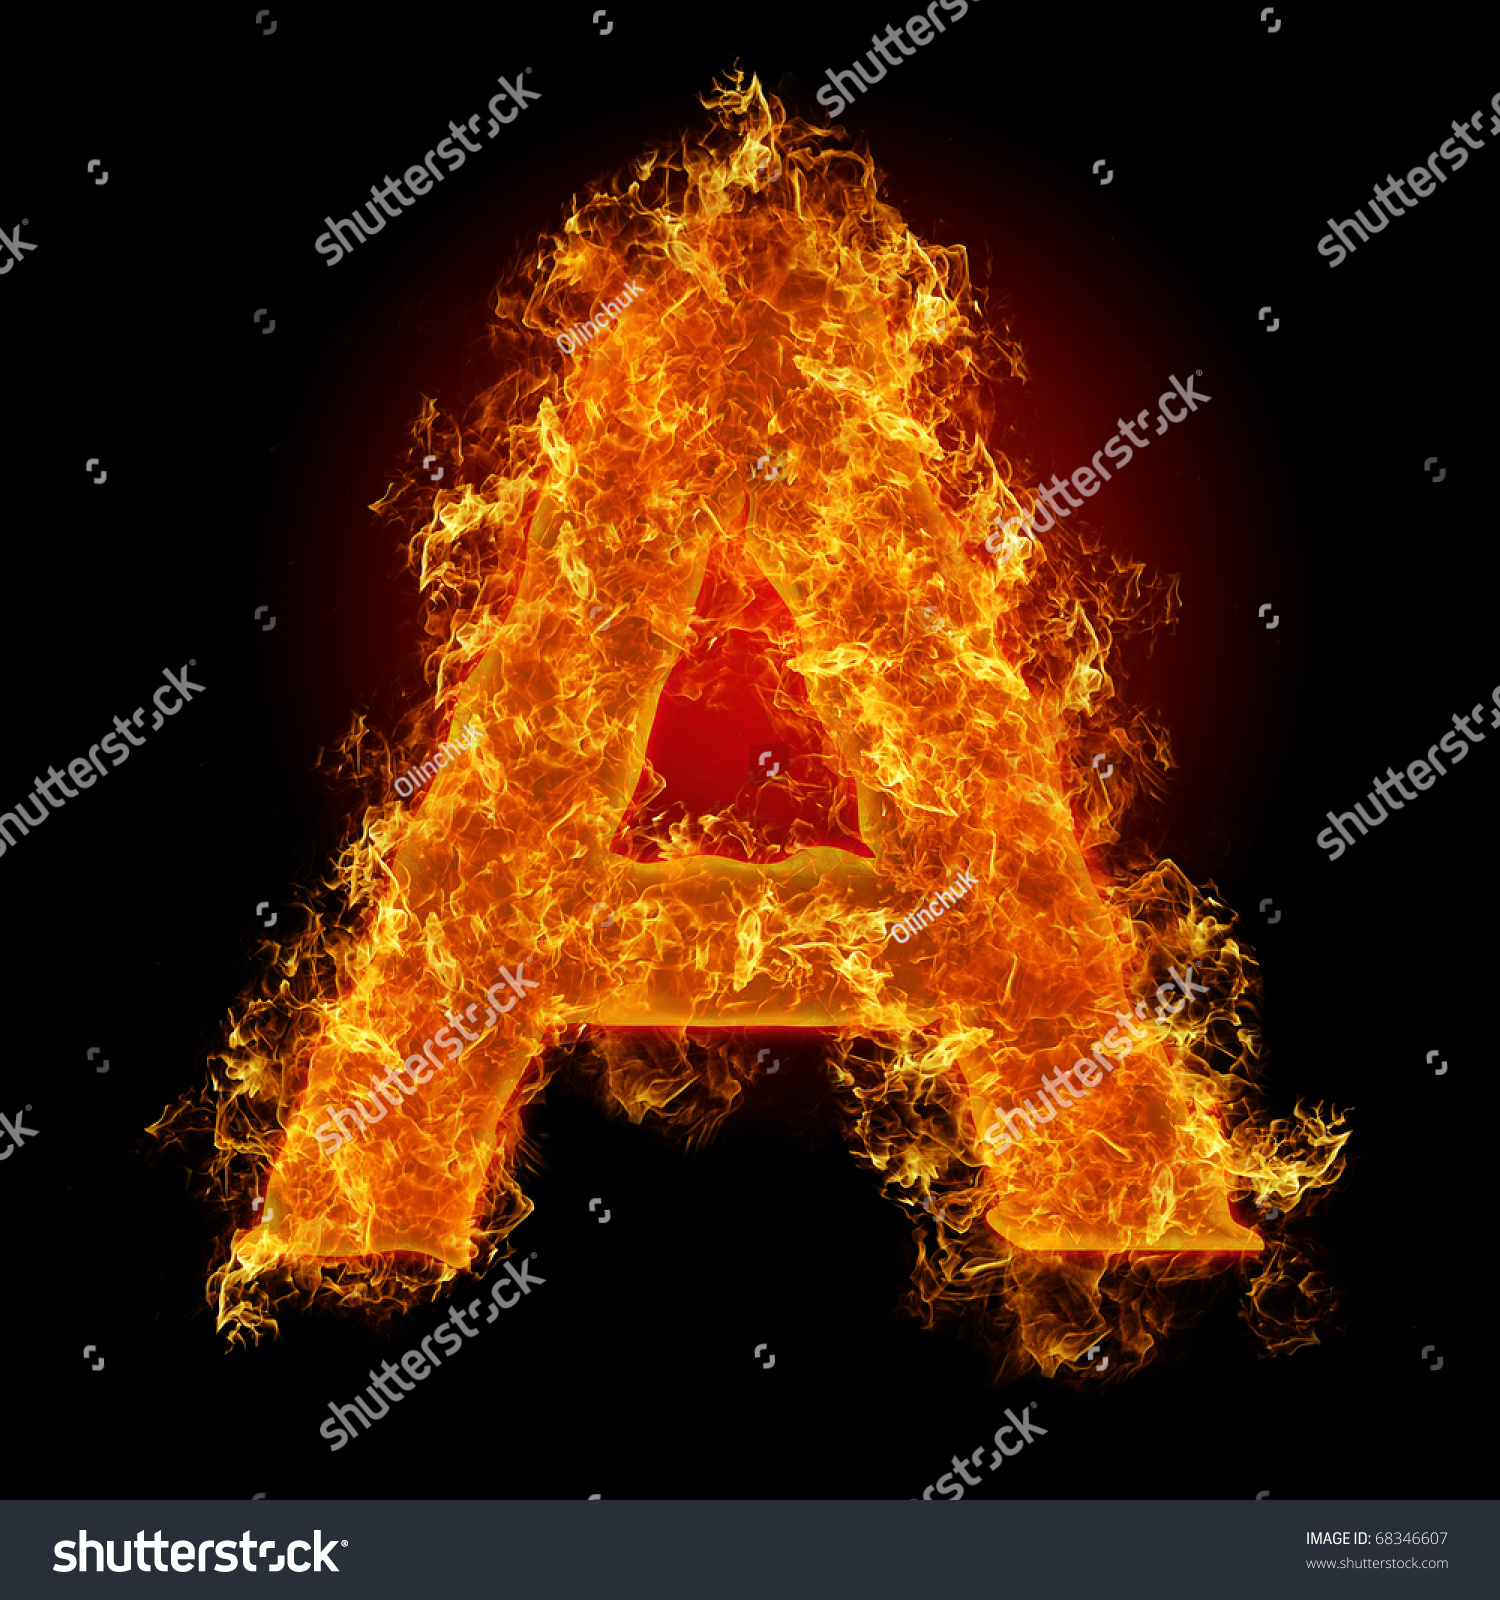 Fire Letter On Black Background Stock Illustration 68346607 - Shutterstock